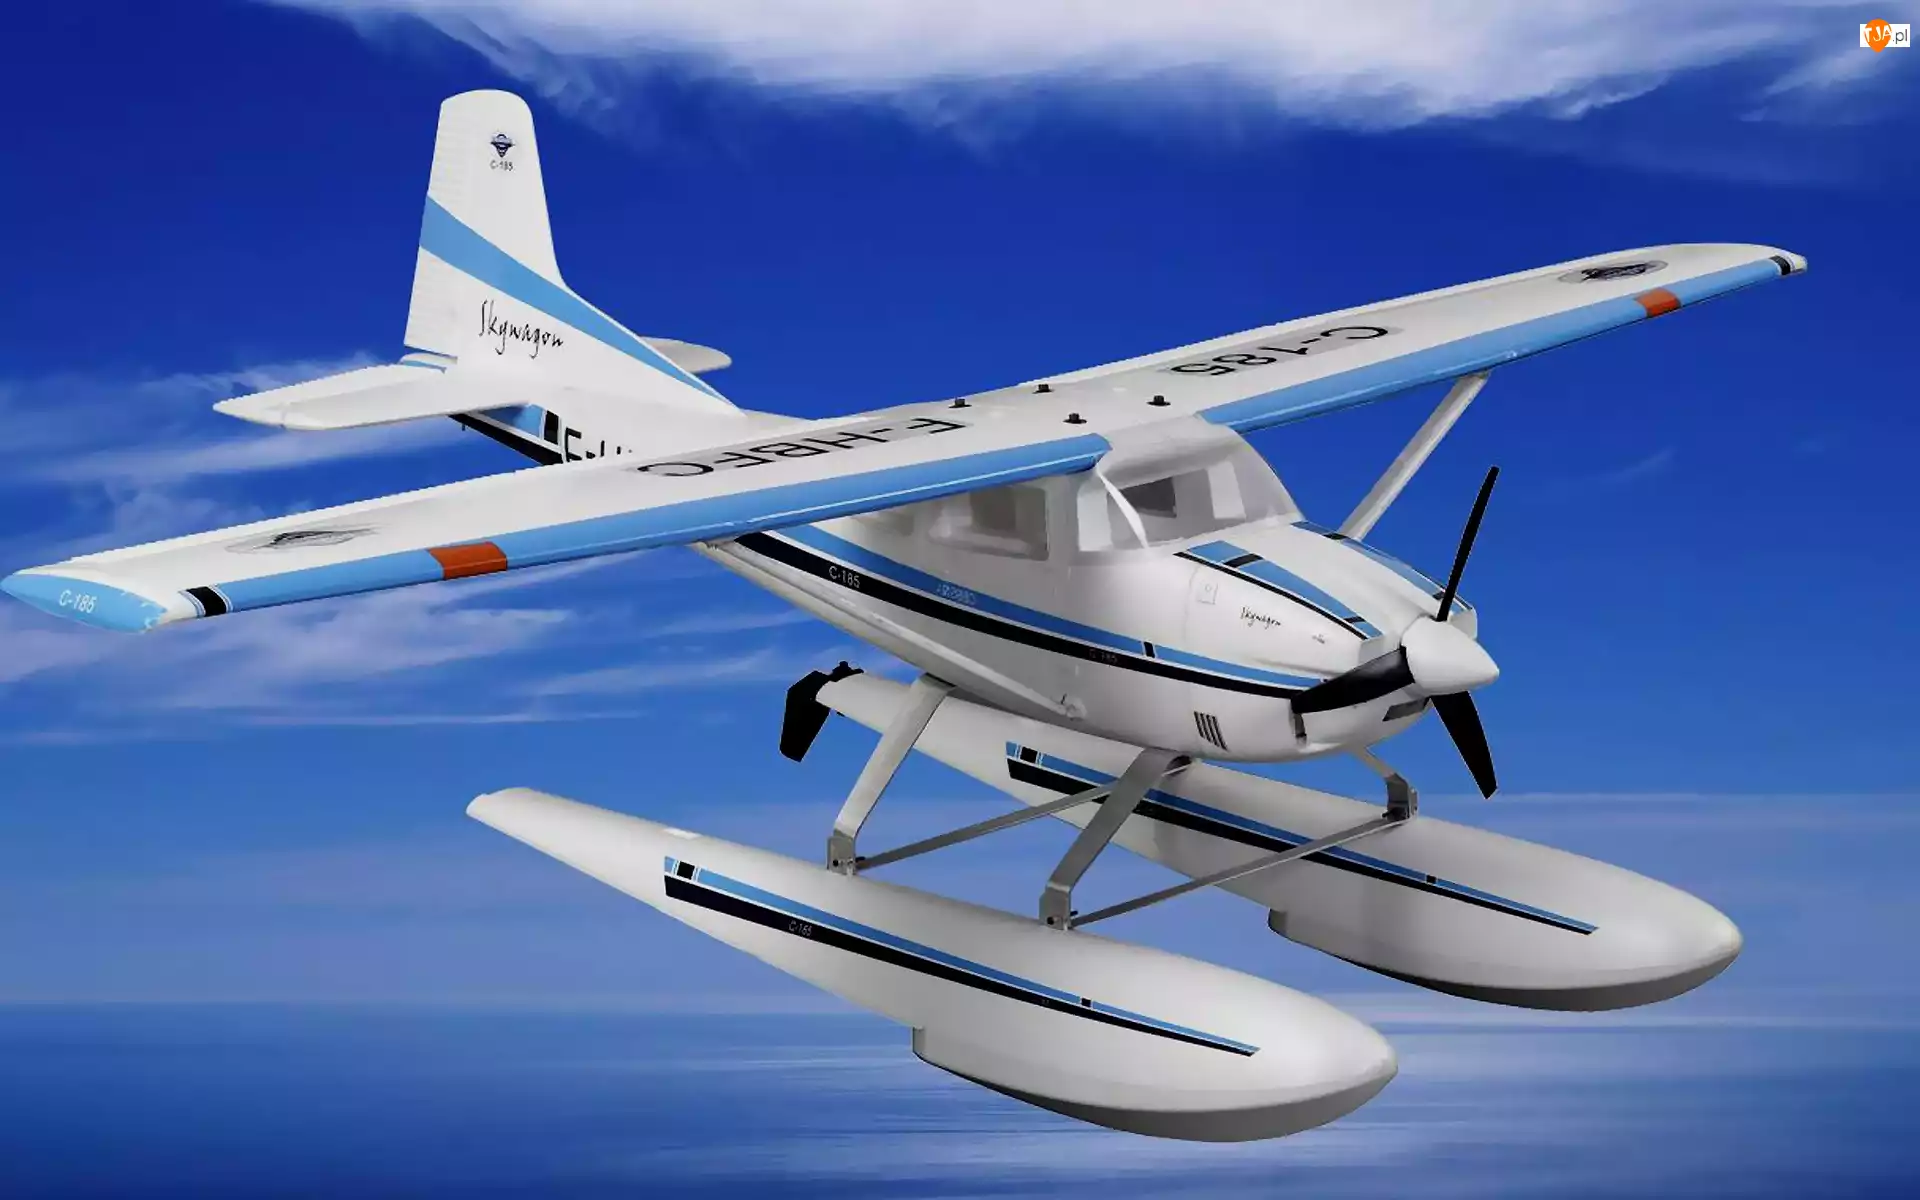 Grafika, Cessna 185, Skywagon